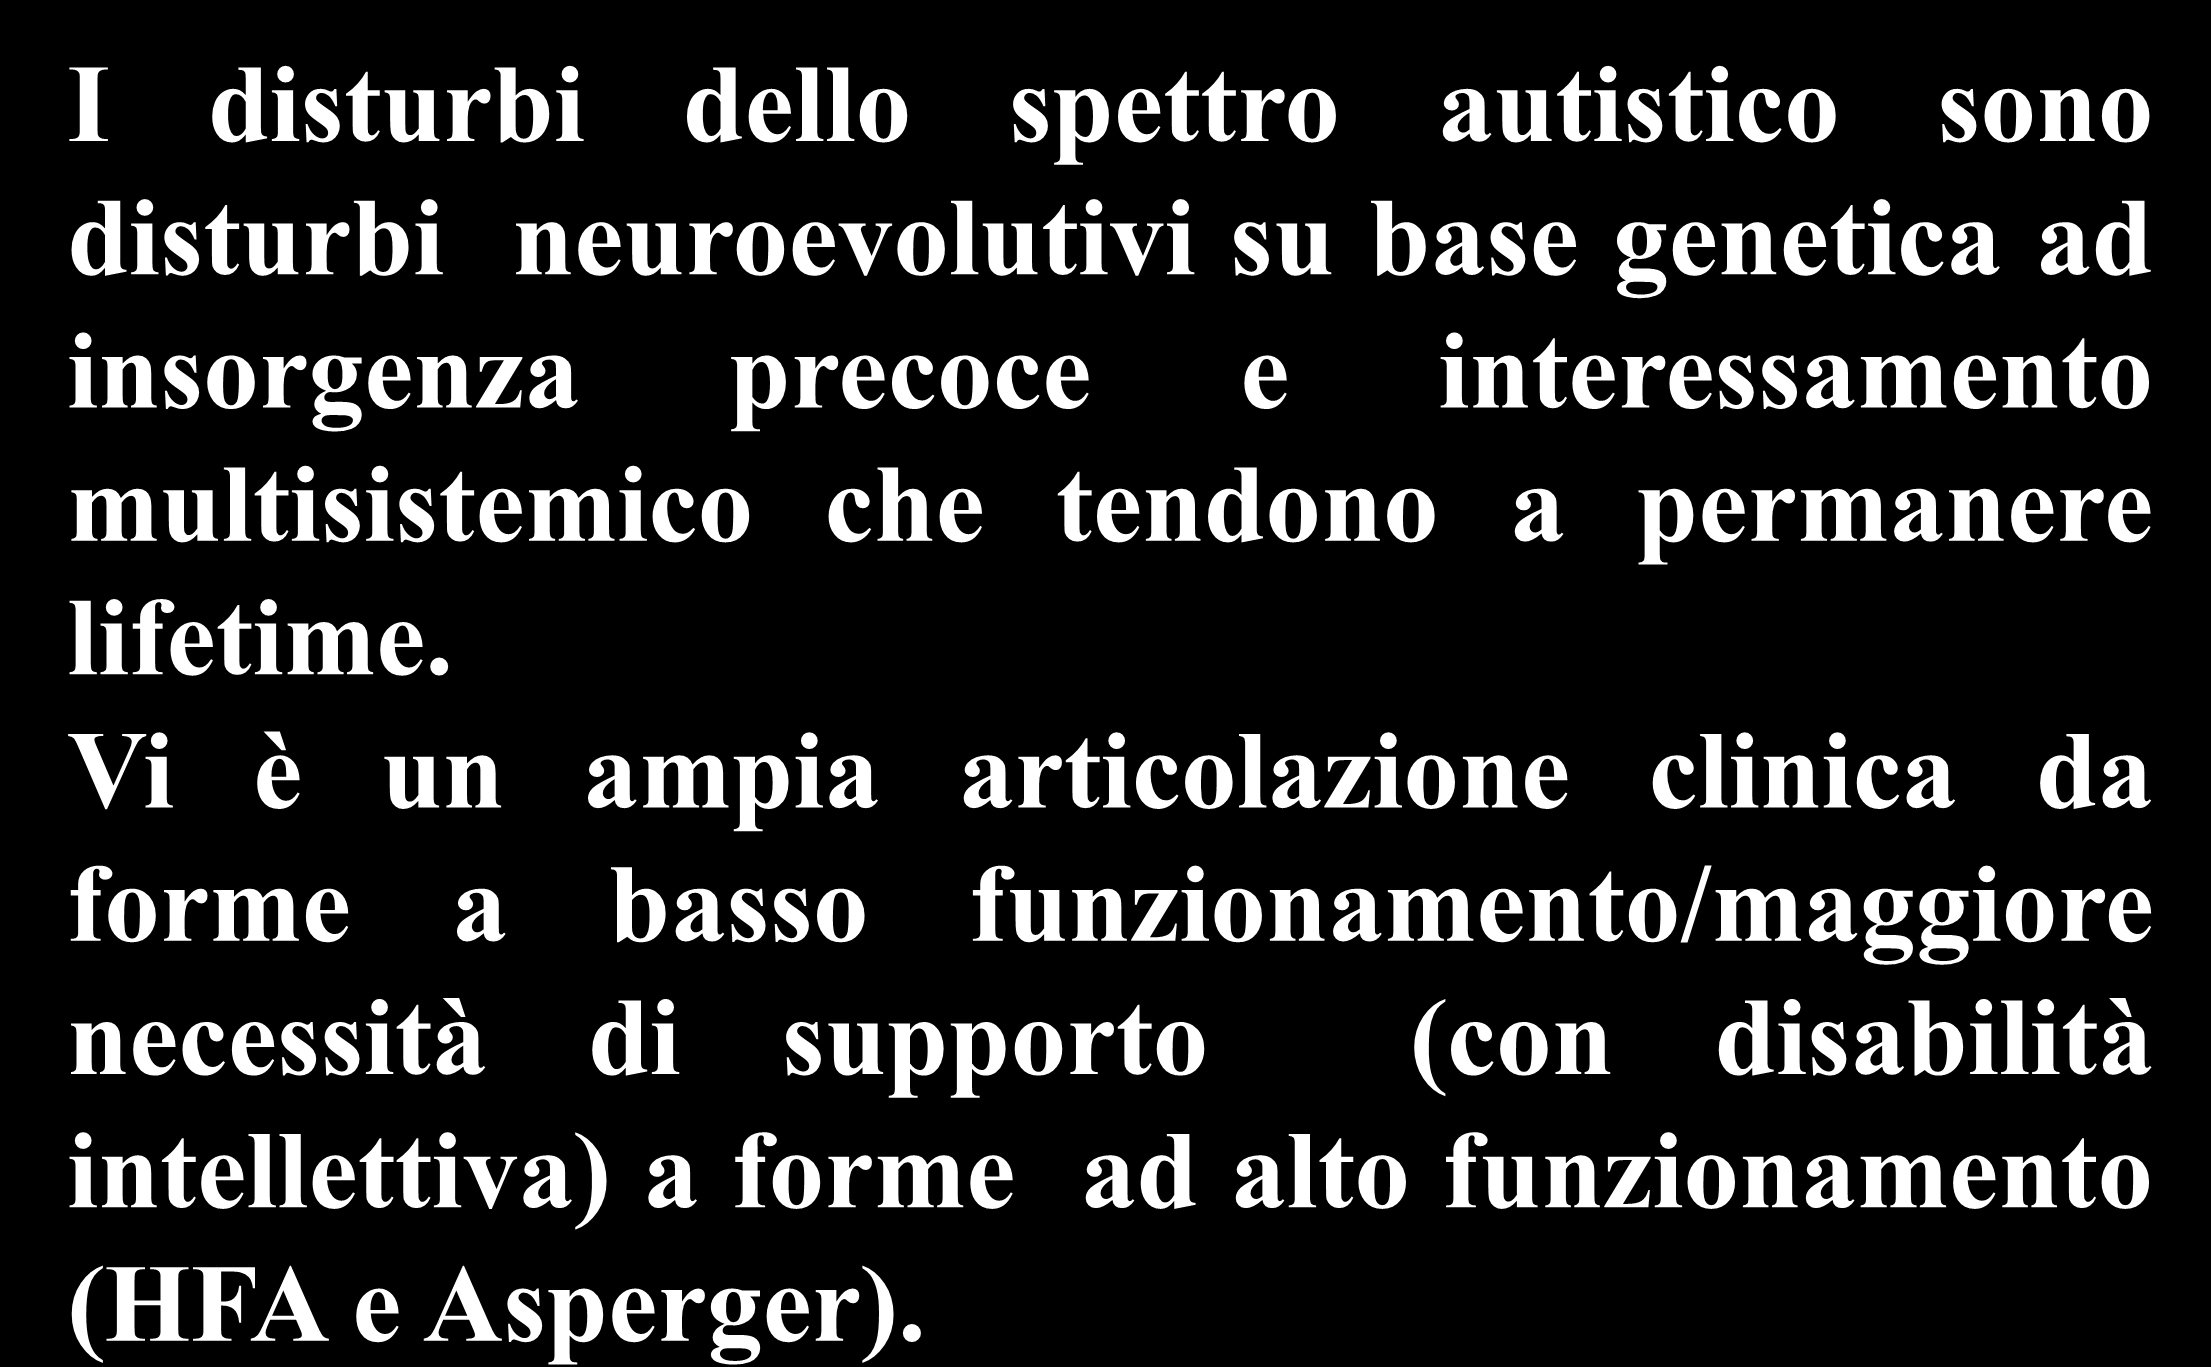 I disturbi dello spettro autistico sono disturbi neuroevolutivi su base genetica ad insorgenza precoce e interessamento multisistemico che tendono a permanere lifetime.